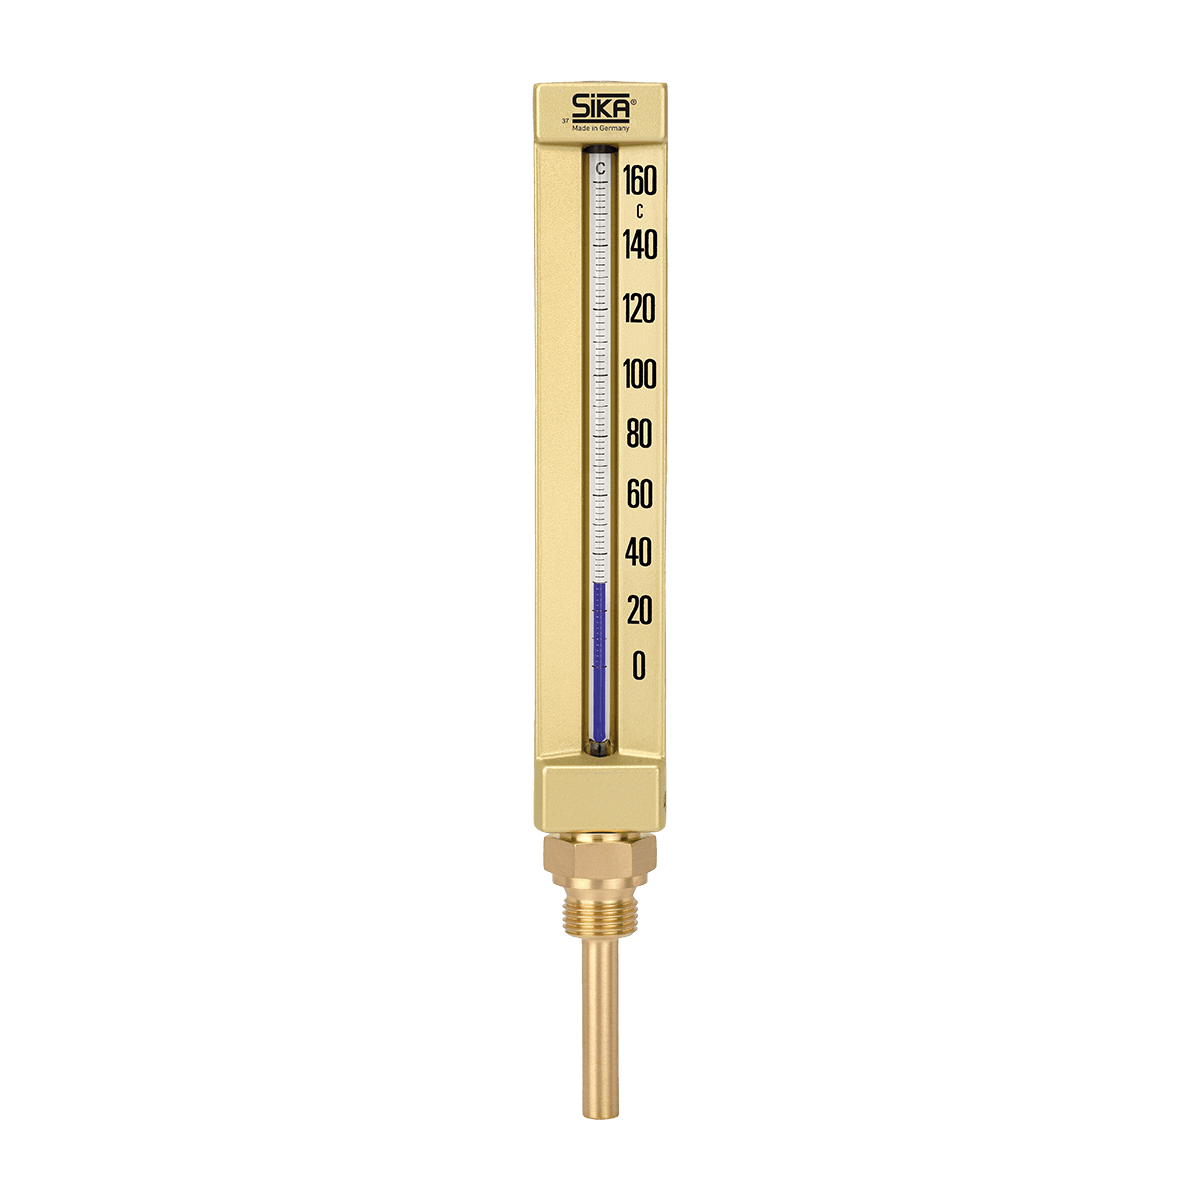 Anlegethermometer 0 Grad Celsius-120 Grad Celsius 